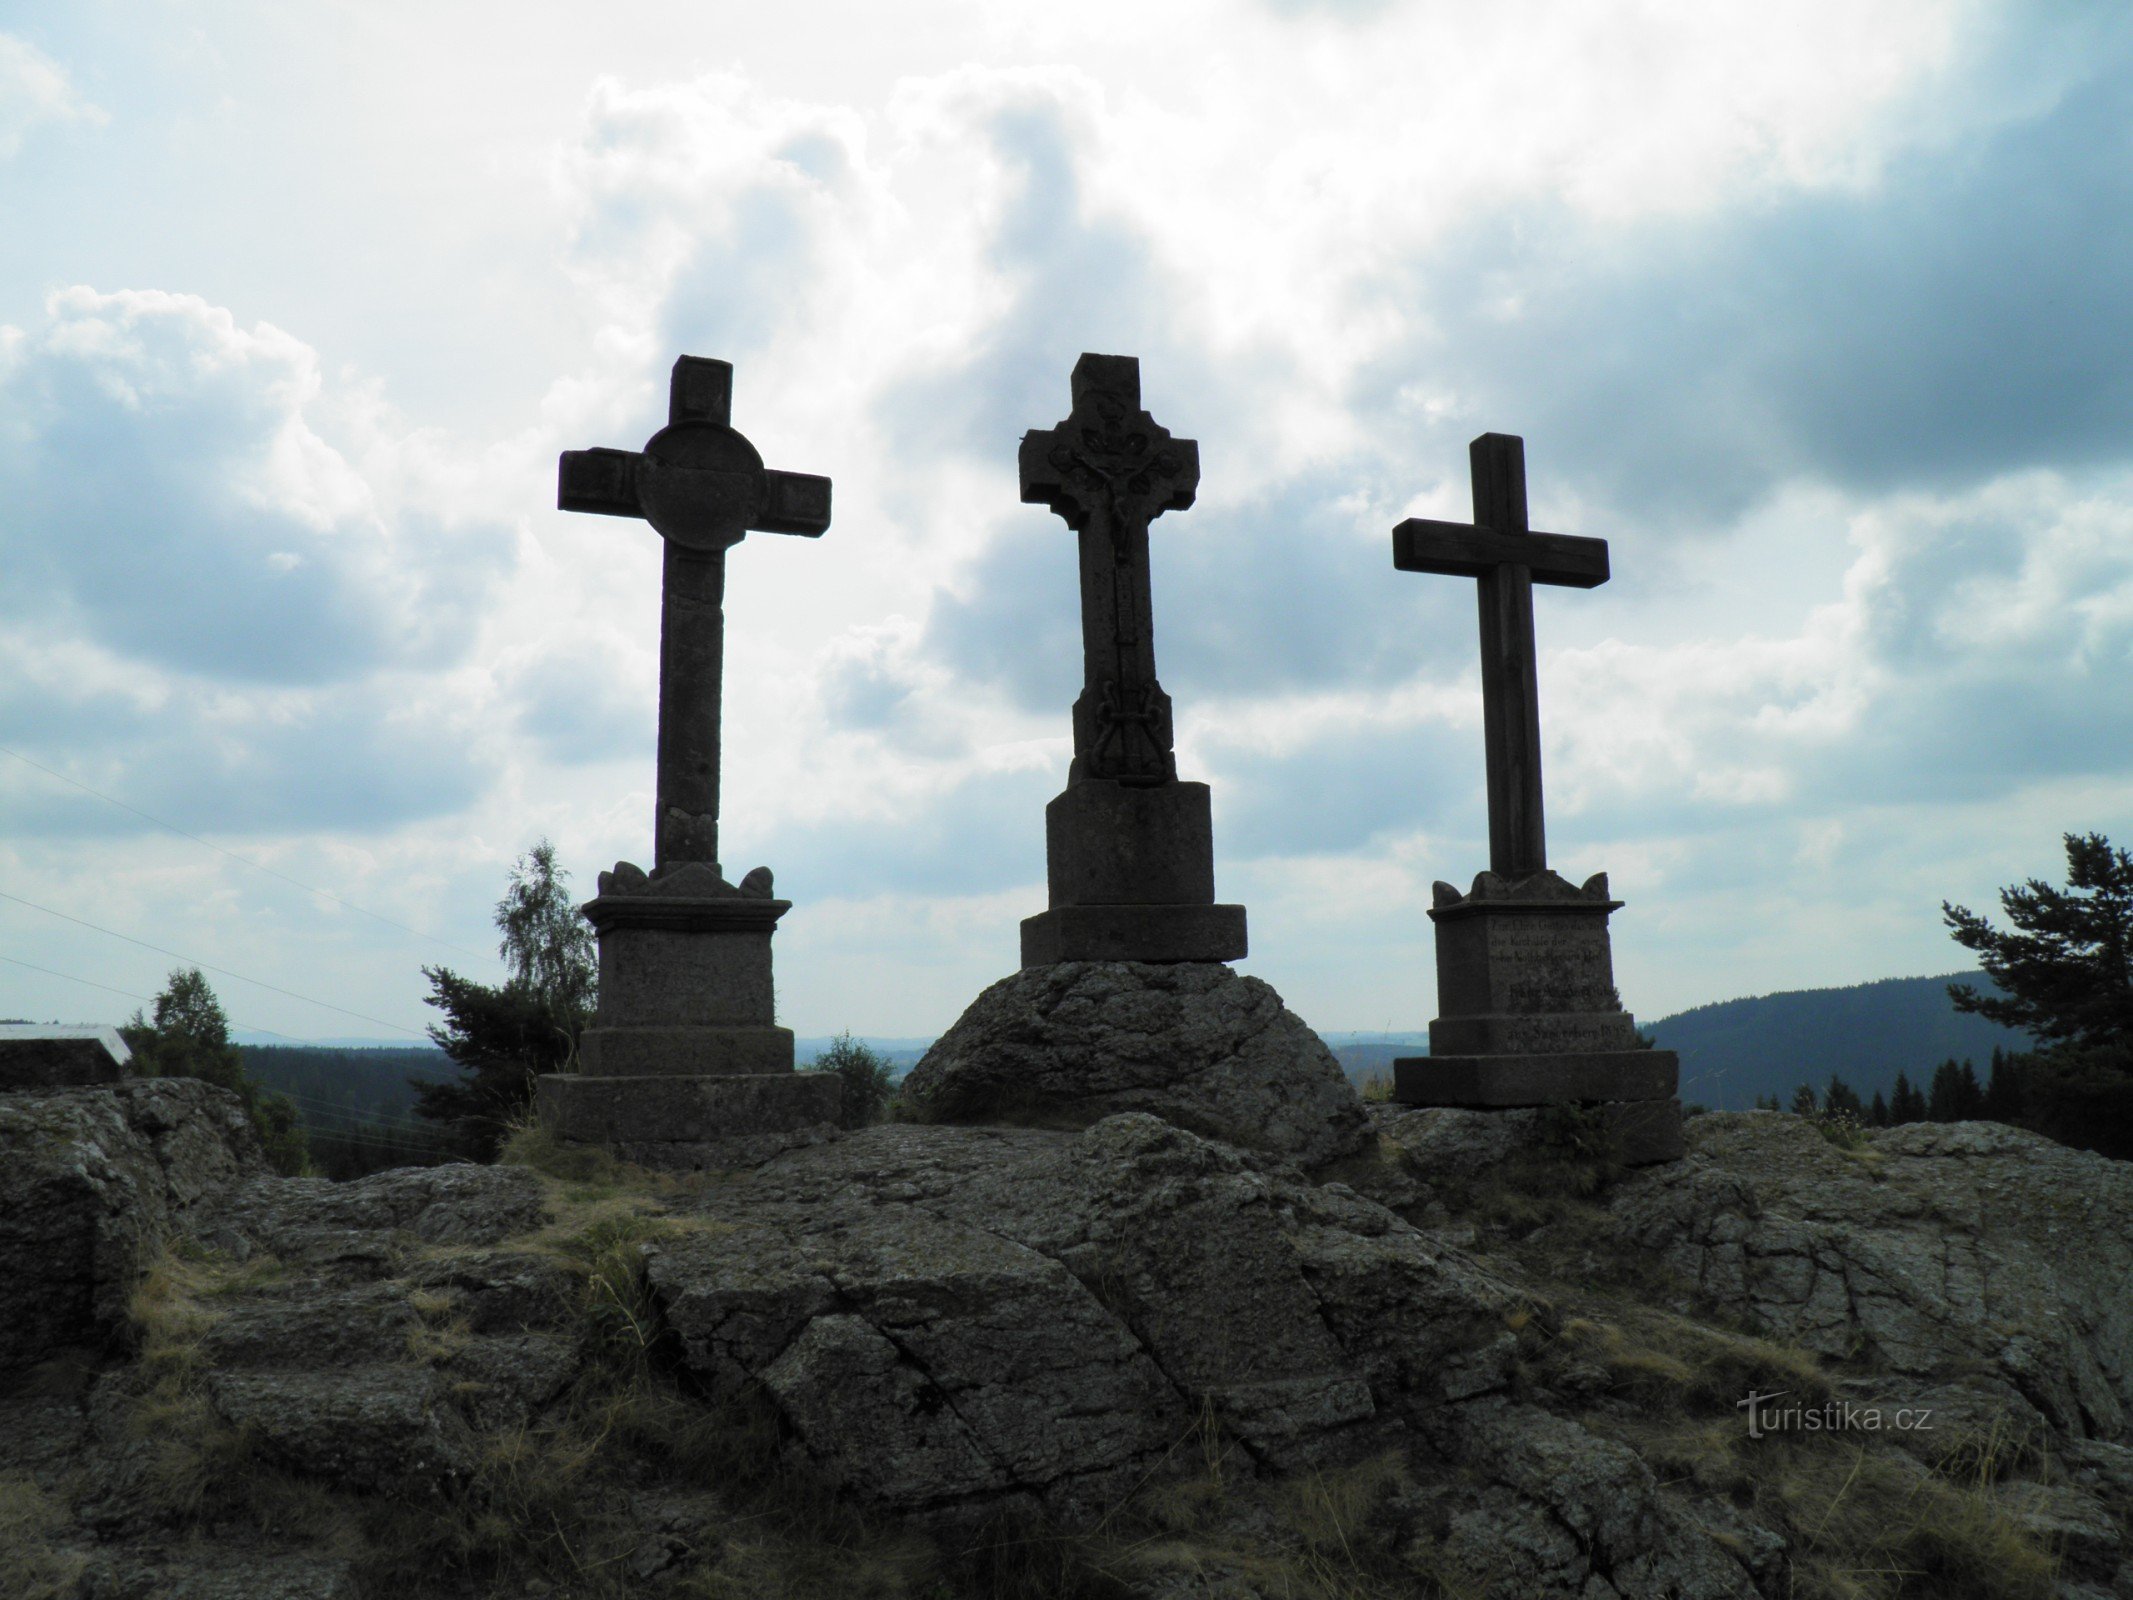 Τρεις σταυροί κοντά στο χωριό Prameny.